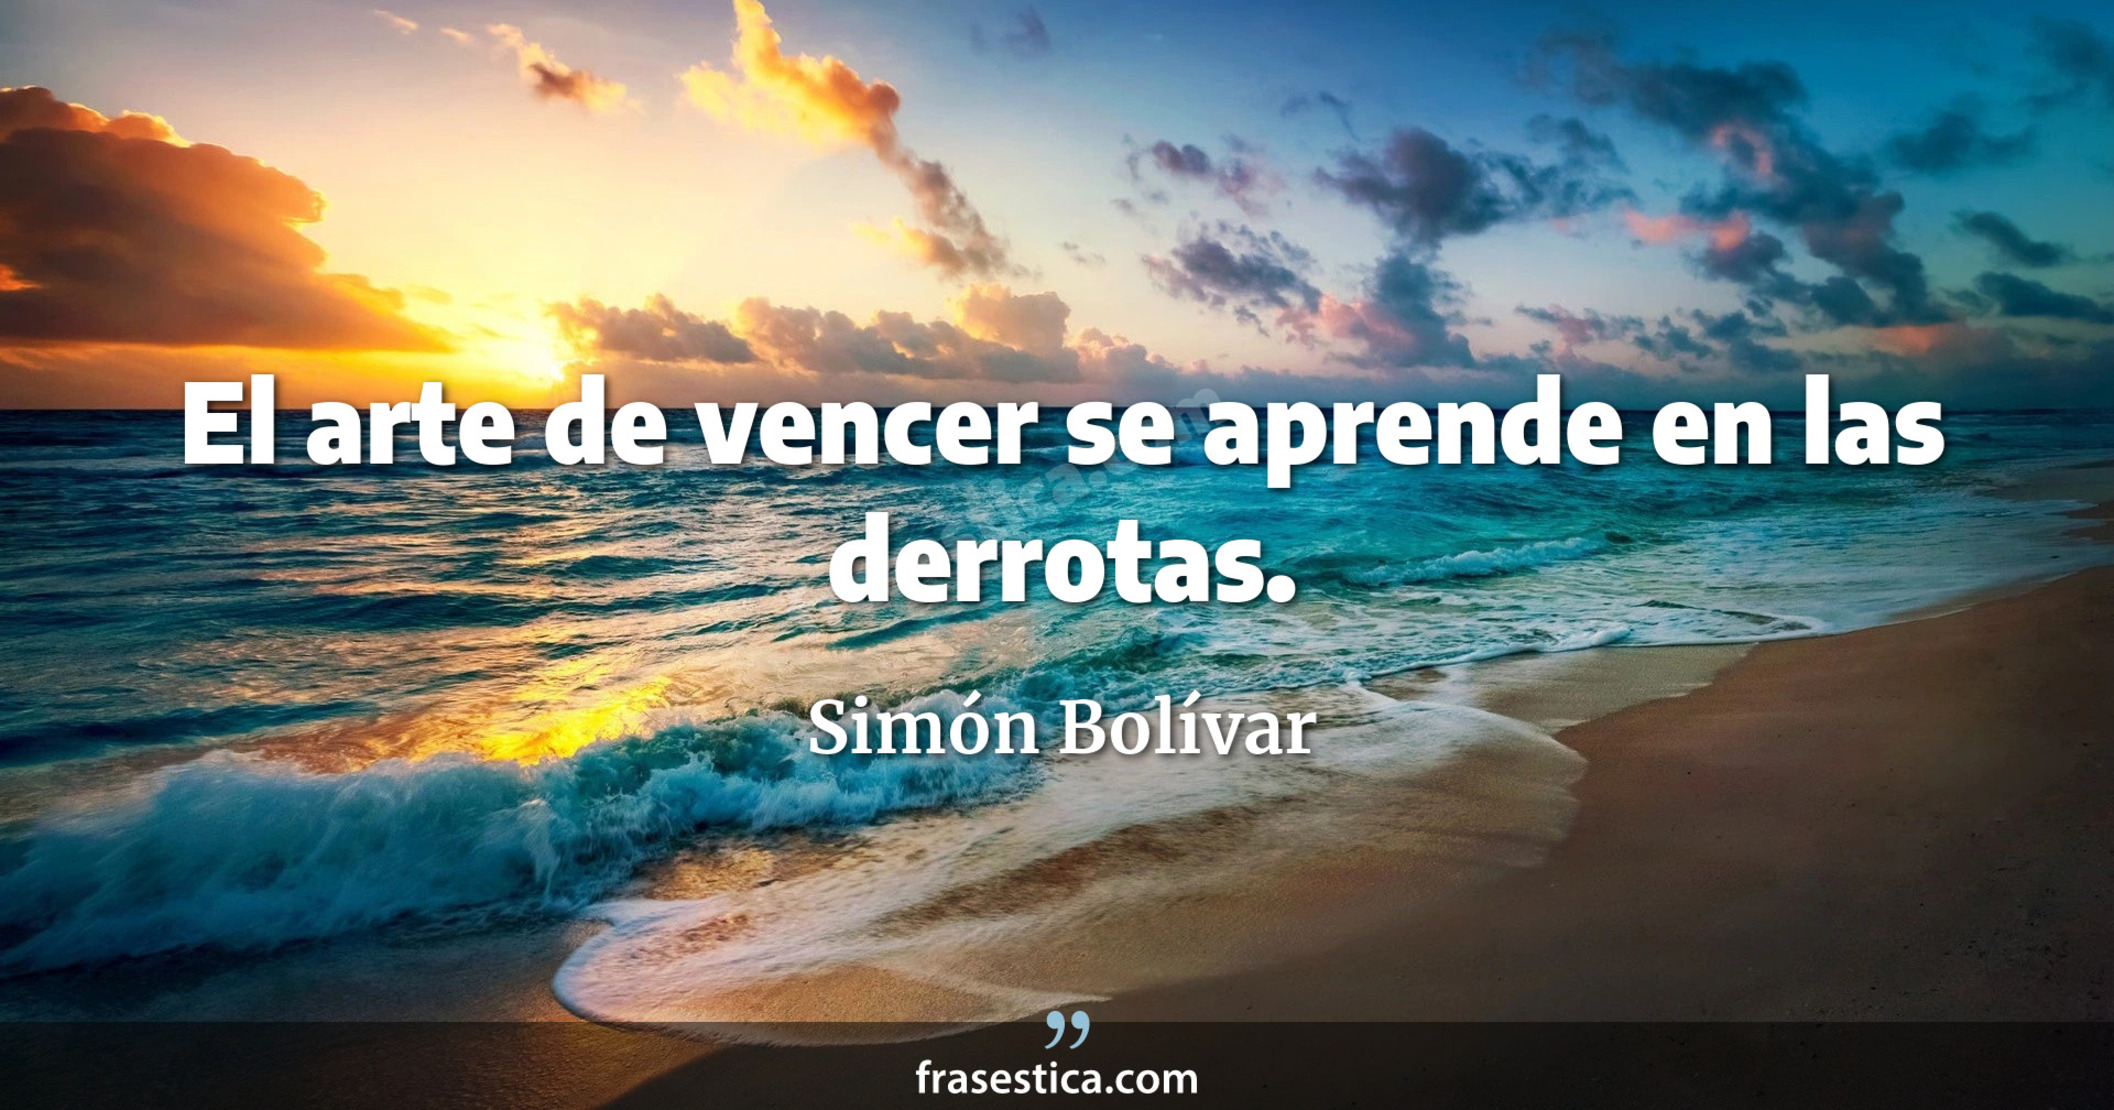 El arte de vencer se aprende en las derrotas. - Simón Bolívar